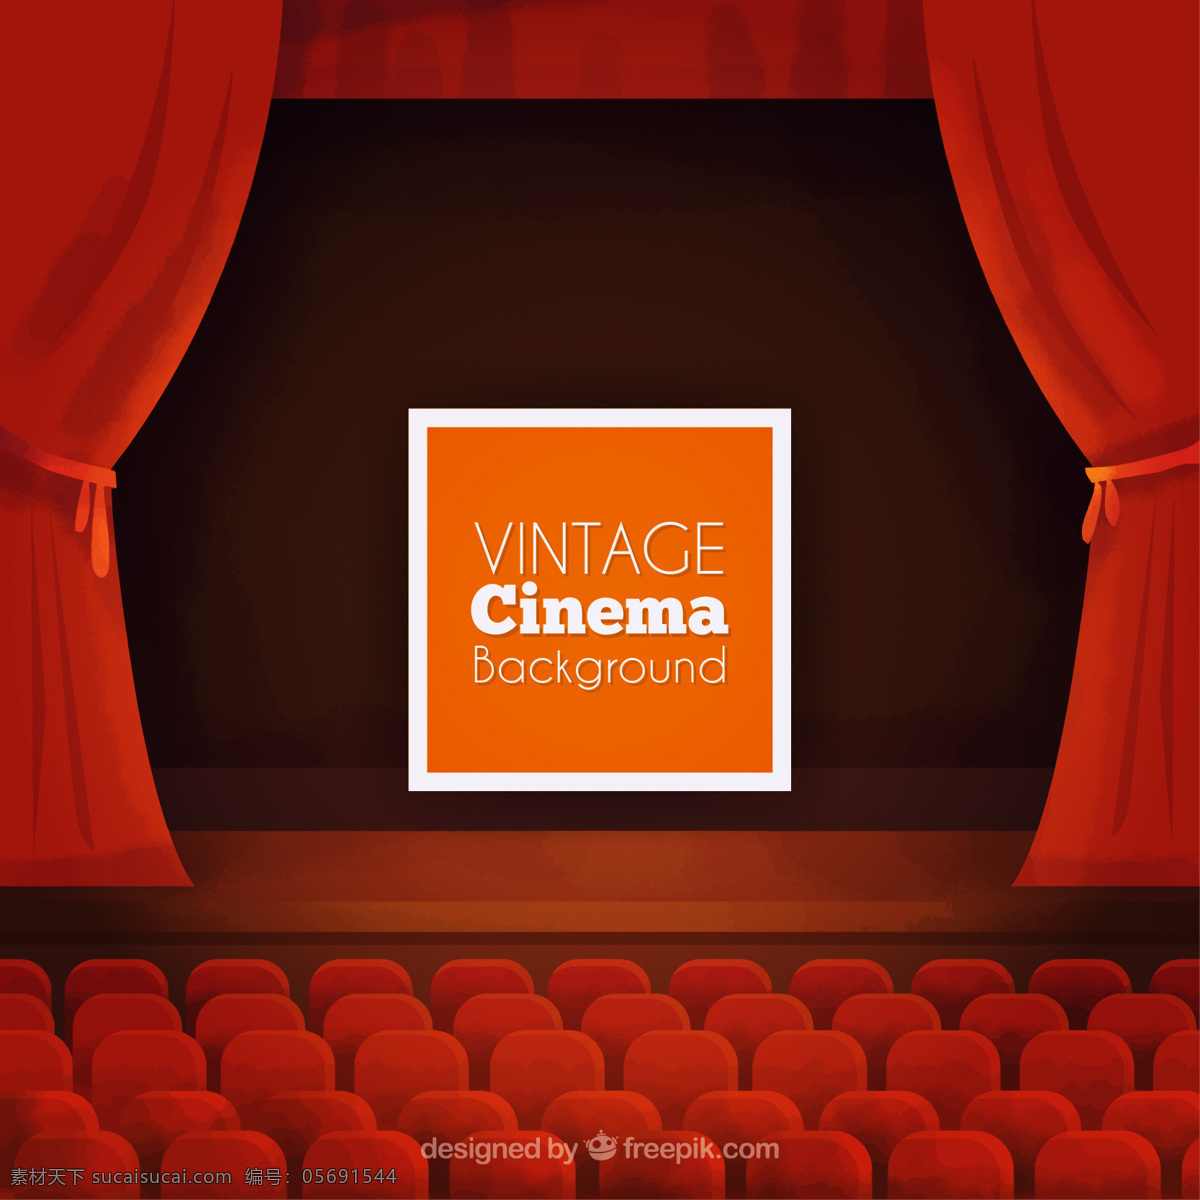 老式 电影 背景 老式的 红色 红色的背景 壁纸 窗帘 有趣 表演 剧院 娱乐 座椅 休闲 现实 芦苇